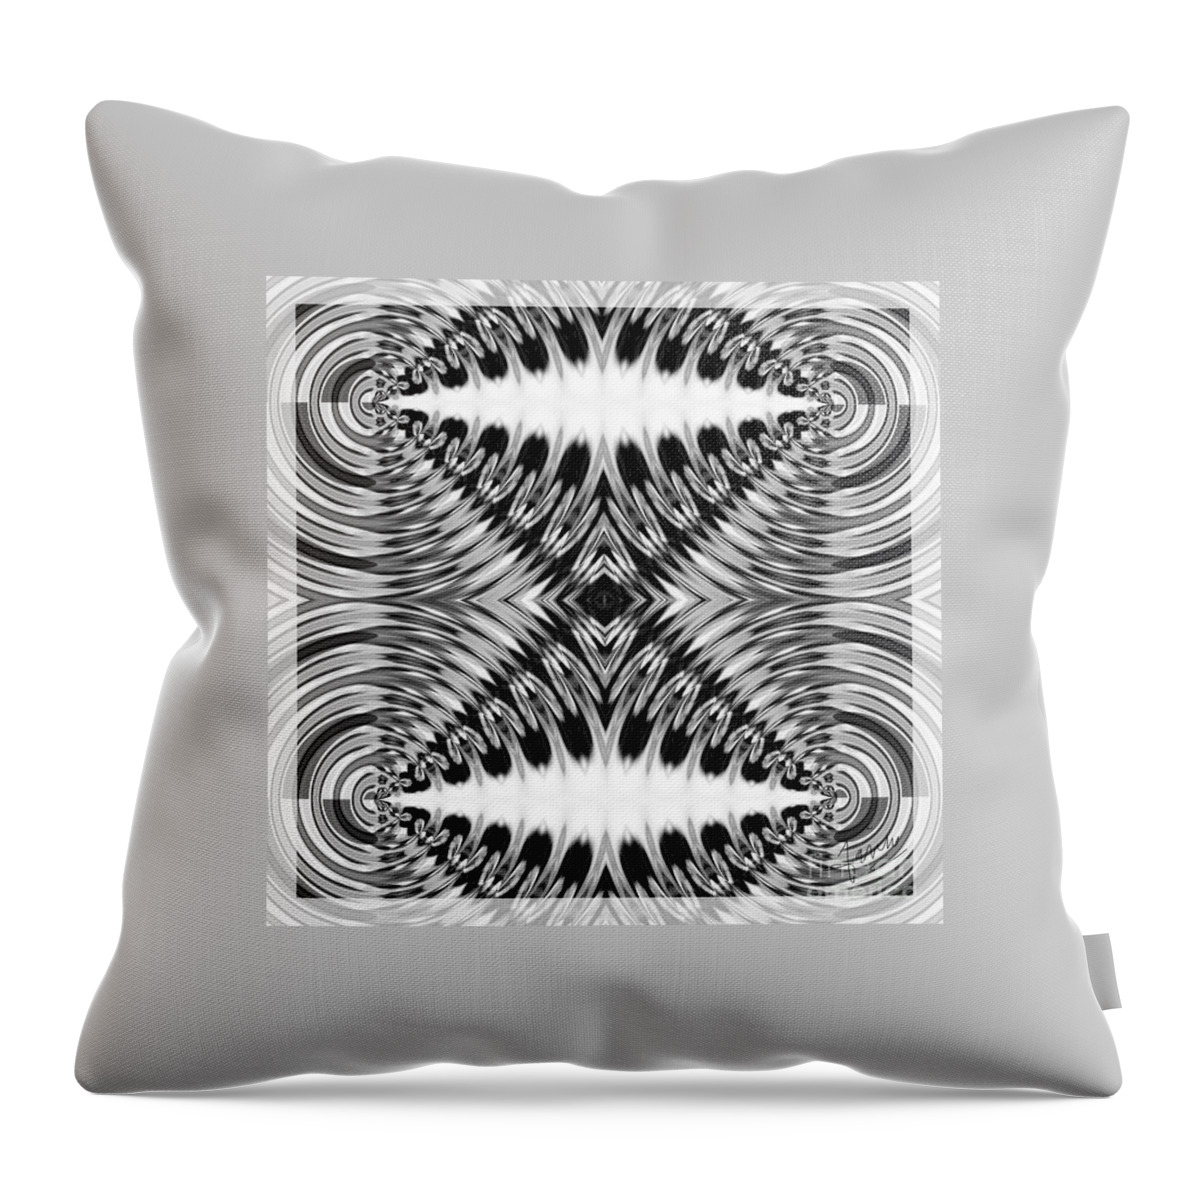 Fania Simon Throw Pillow featuring the digital art Virtual Illusion-Mindset by Fania Simon